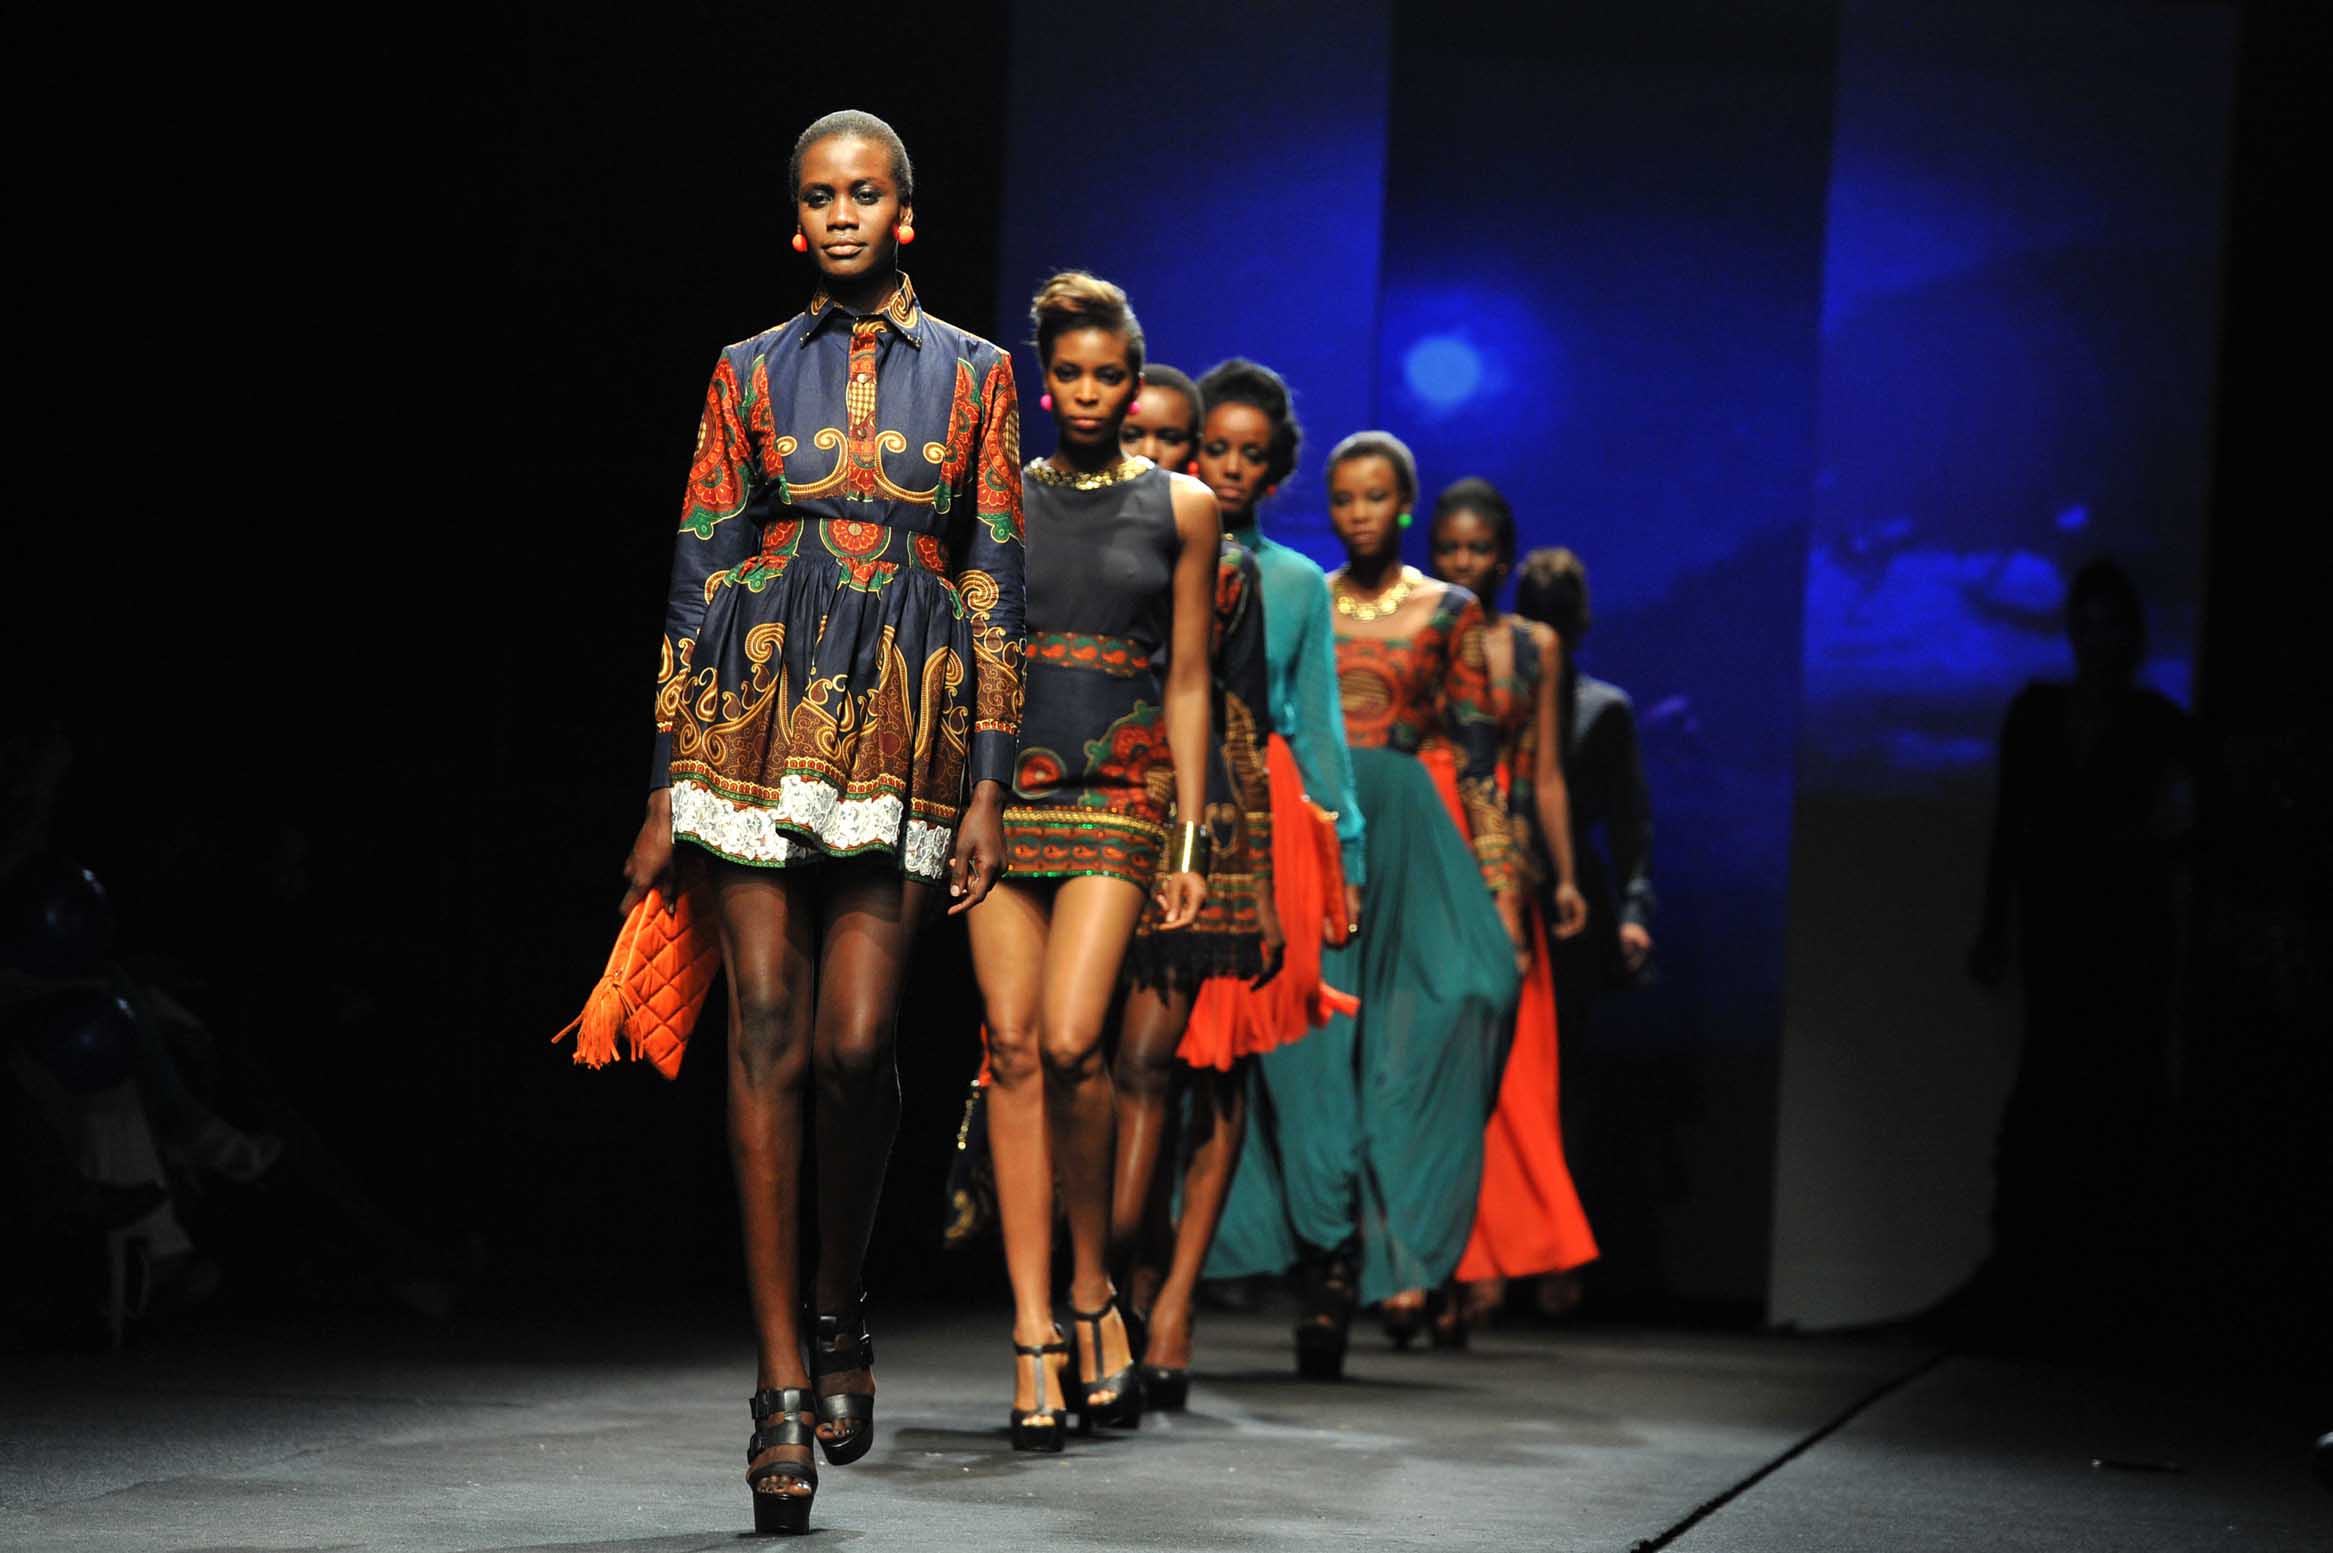 African Fashion Week